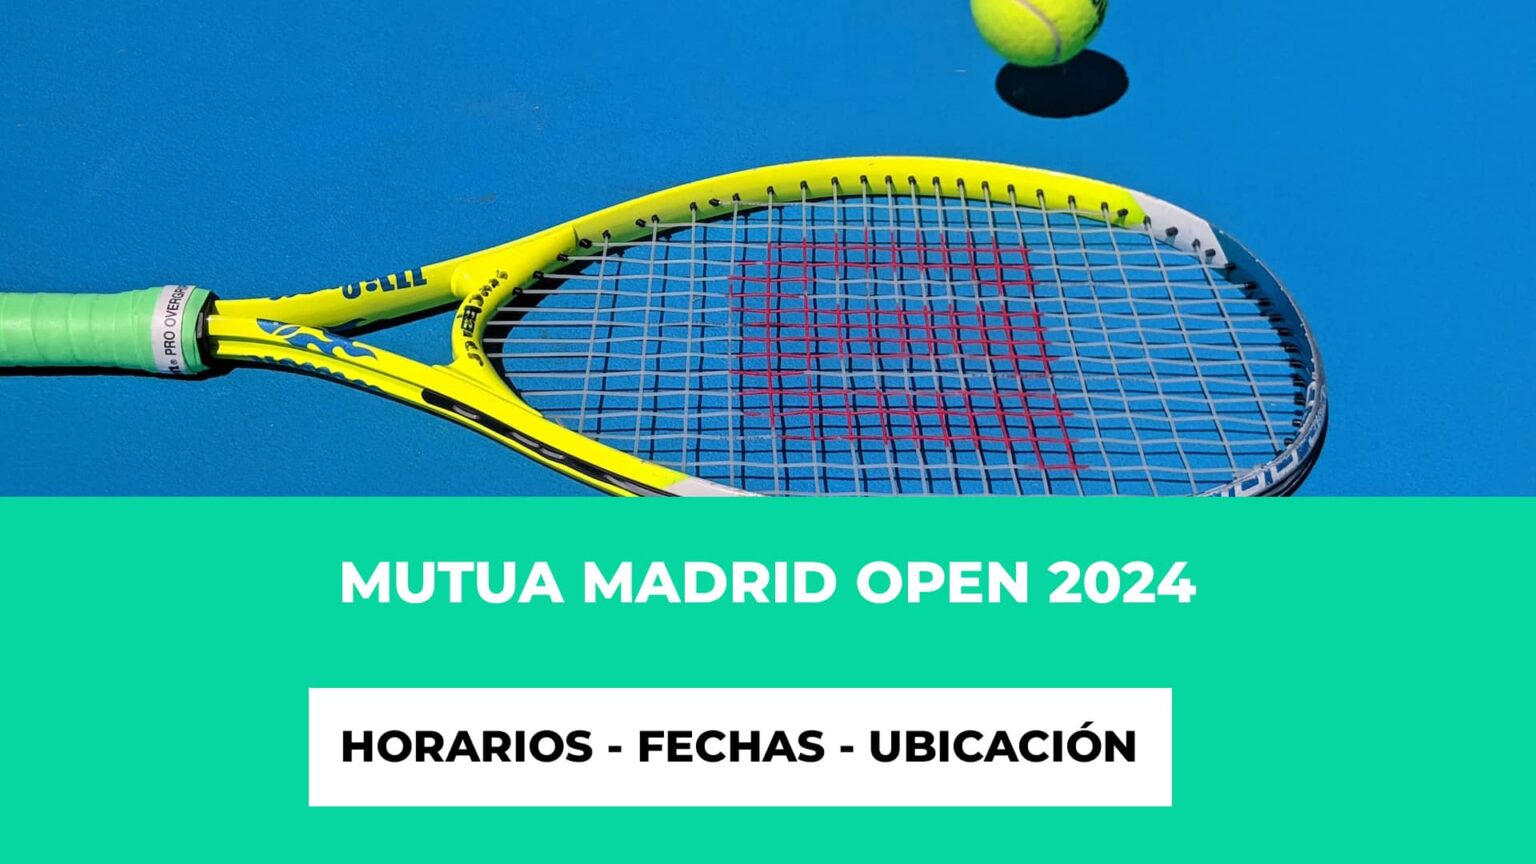 Mutua Madrid Open 2024 Horarios Fechas Ubicación